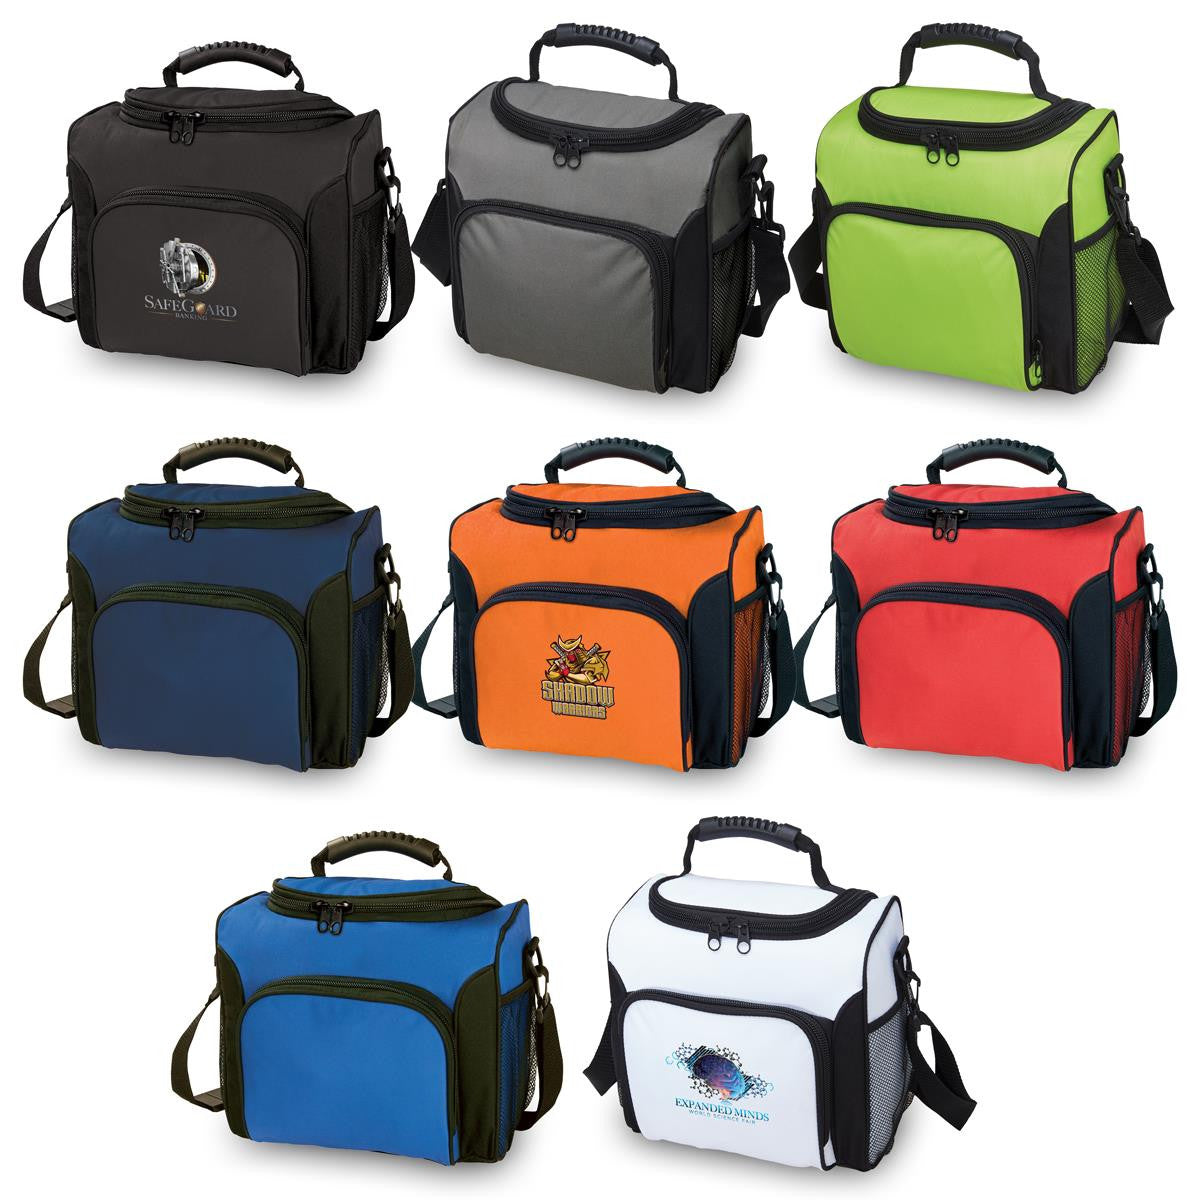 ONLINE SPECIAL ORDER Custom UltiMate Cooler Bag